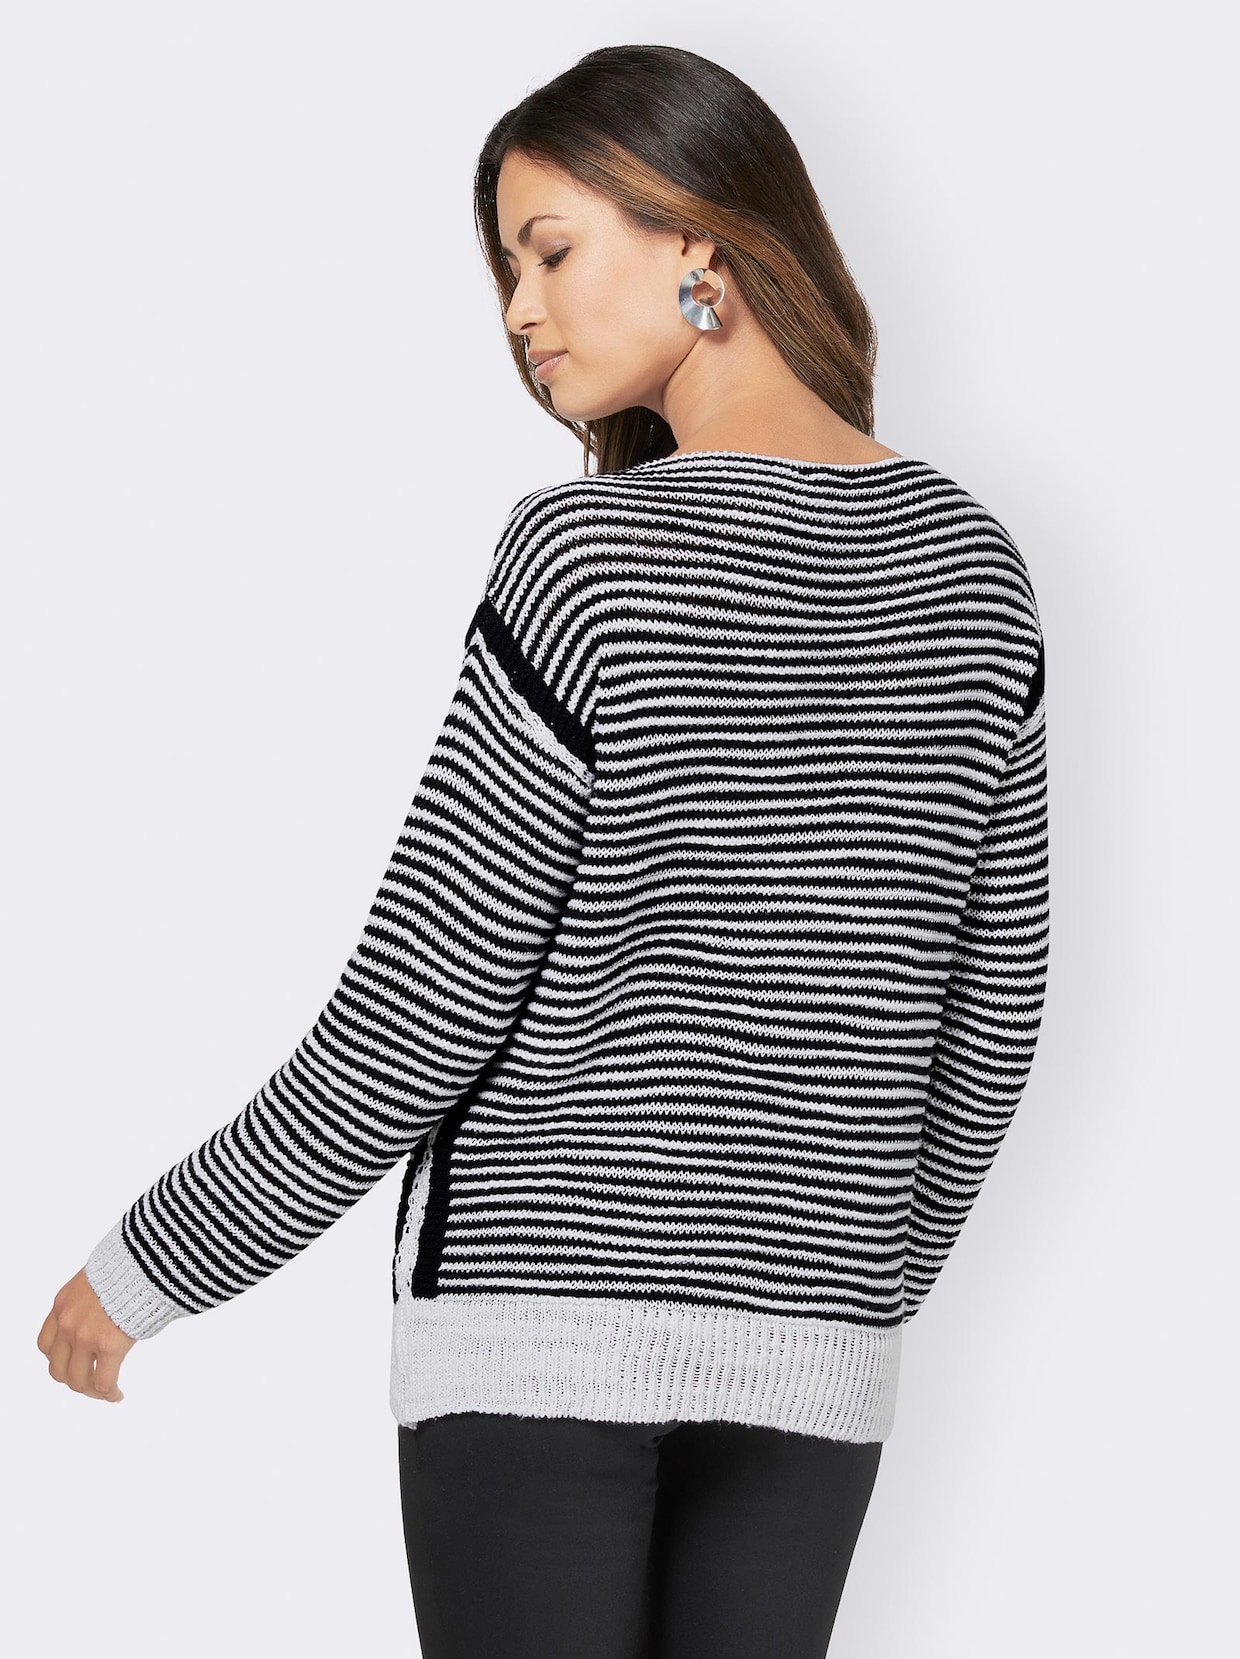 Langarm-Pullover - schwarz-weiß